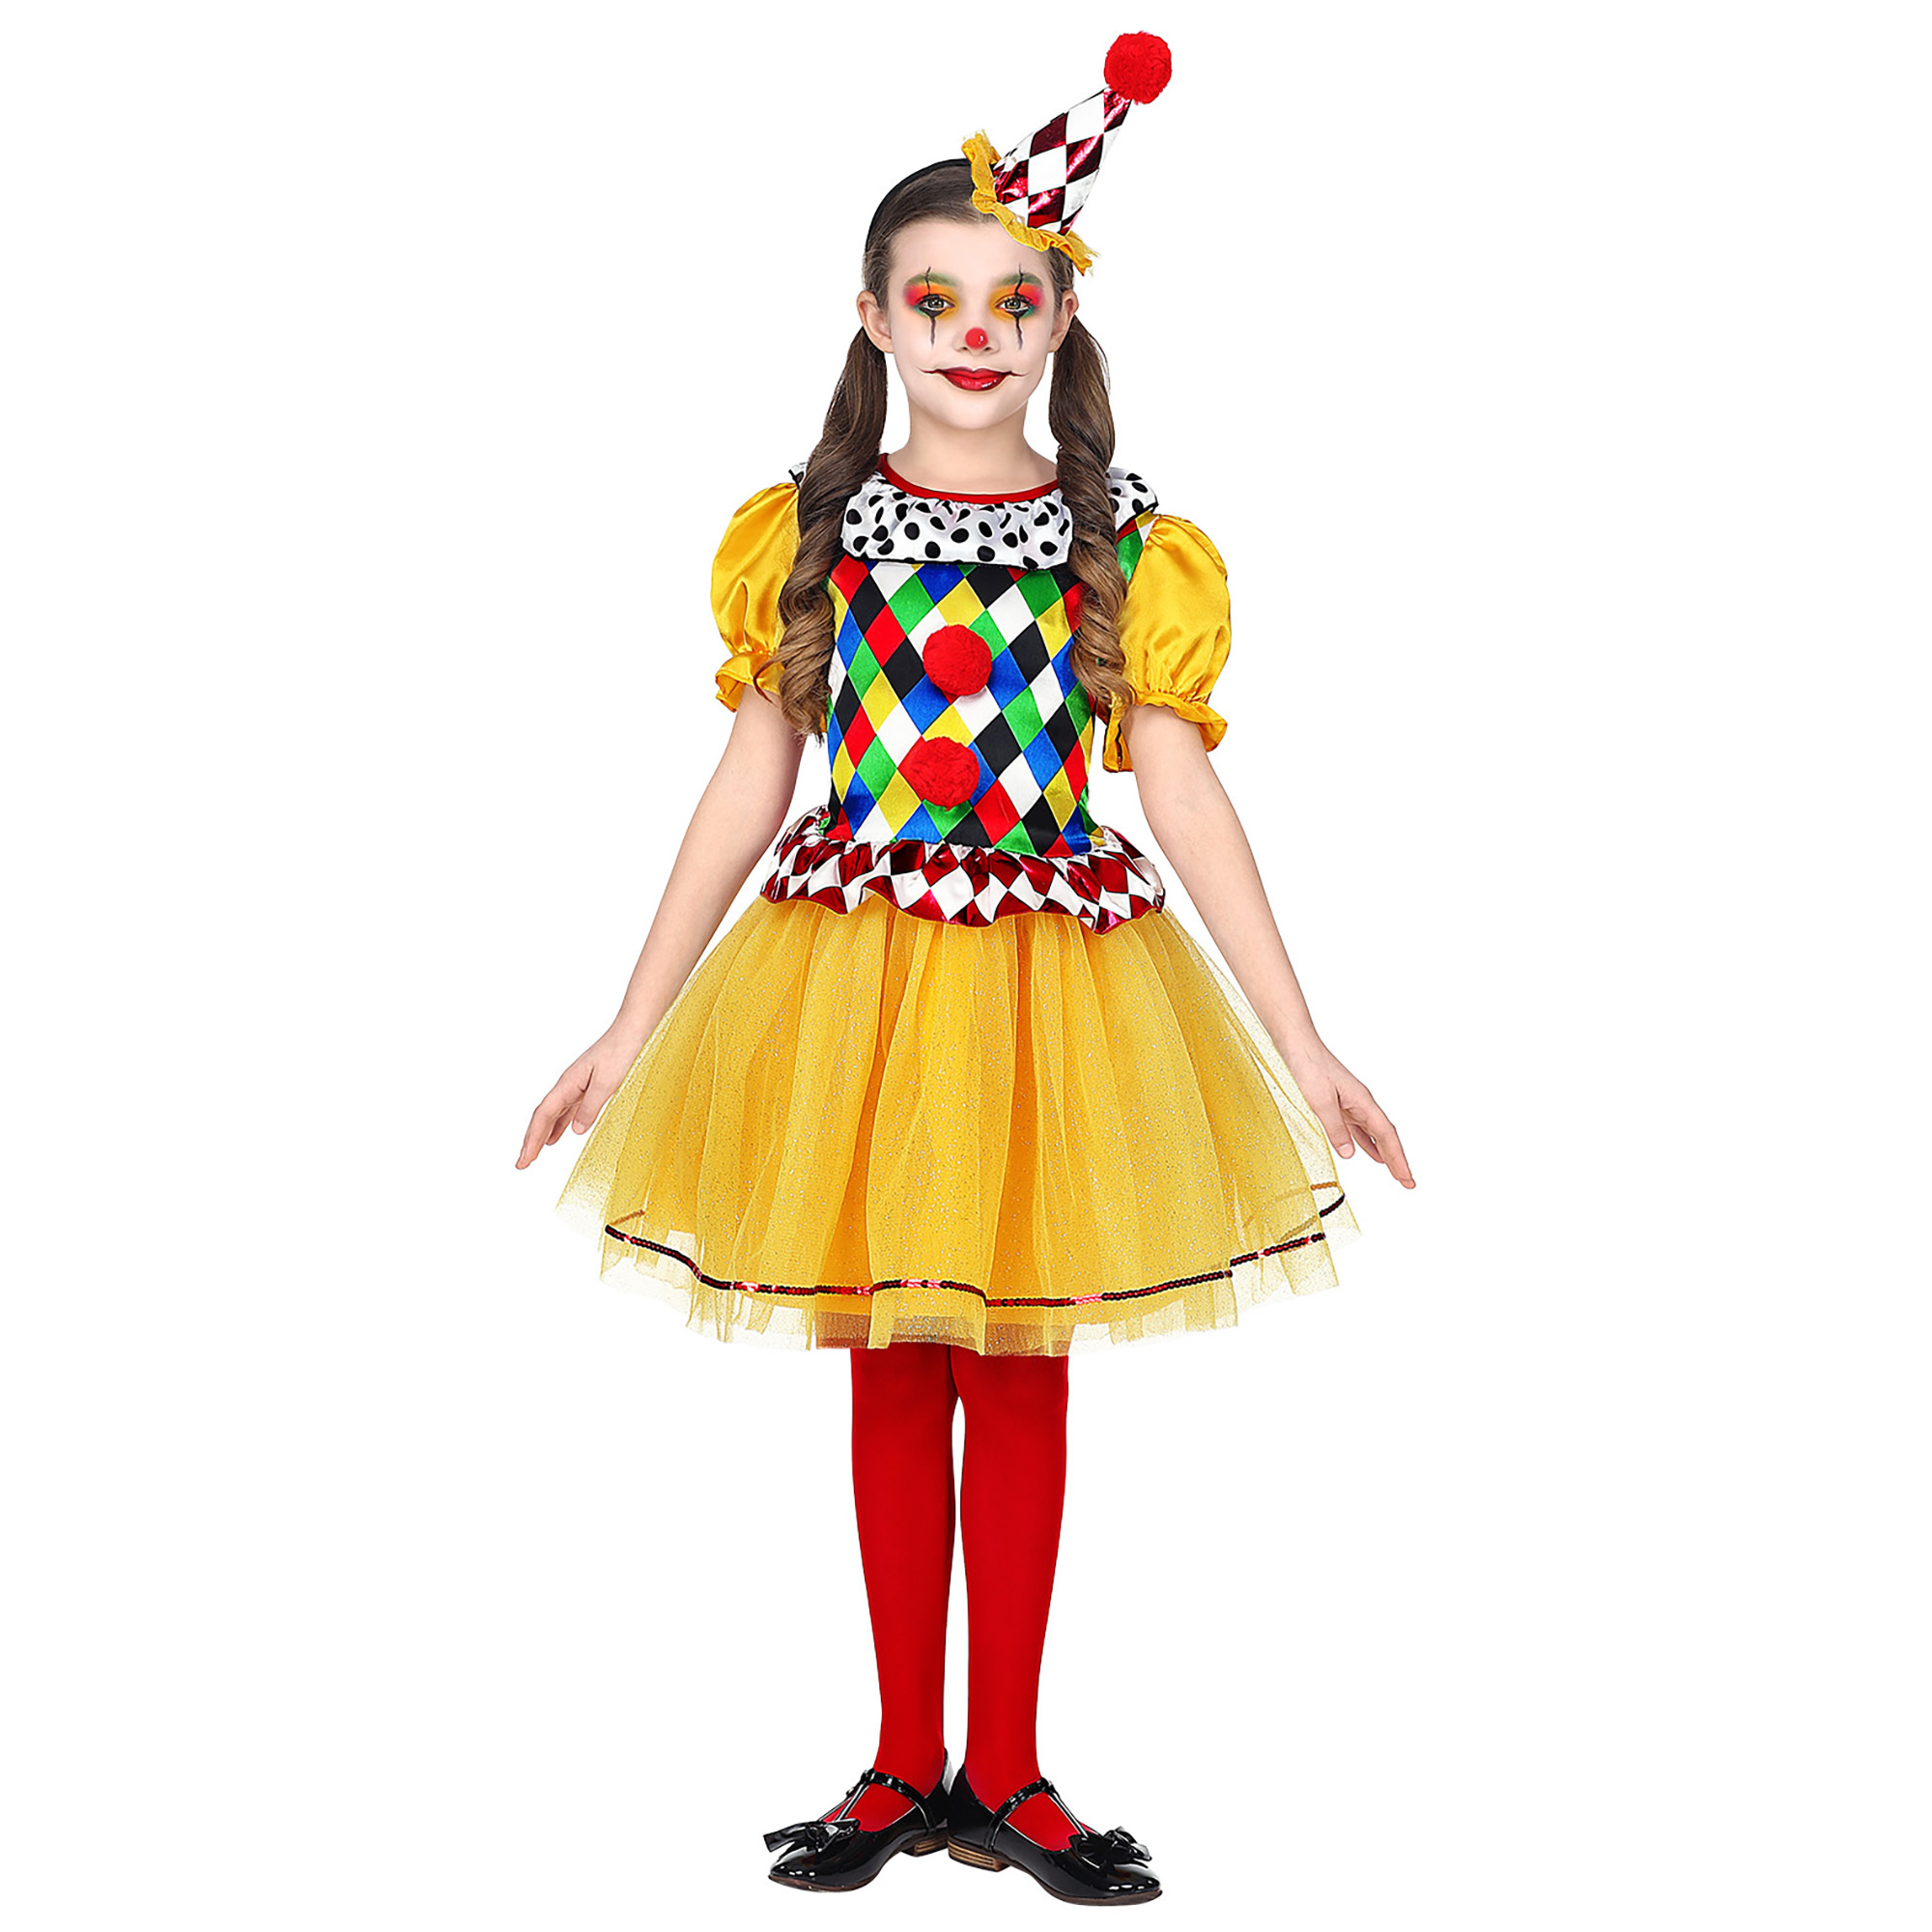 Gezellig en vrolijke clown meisjes kostuum